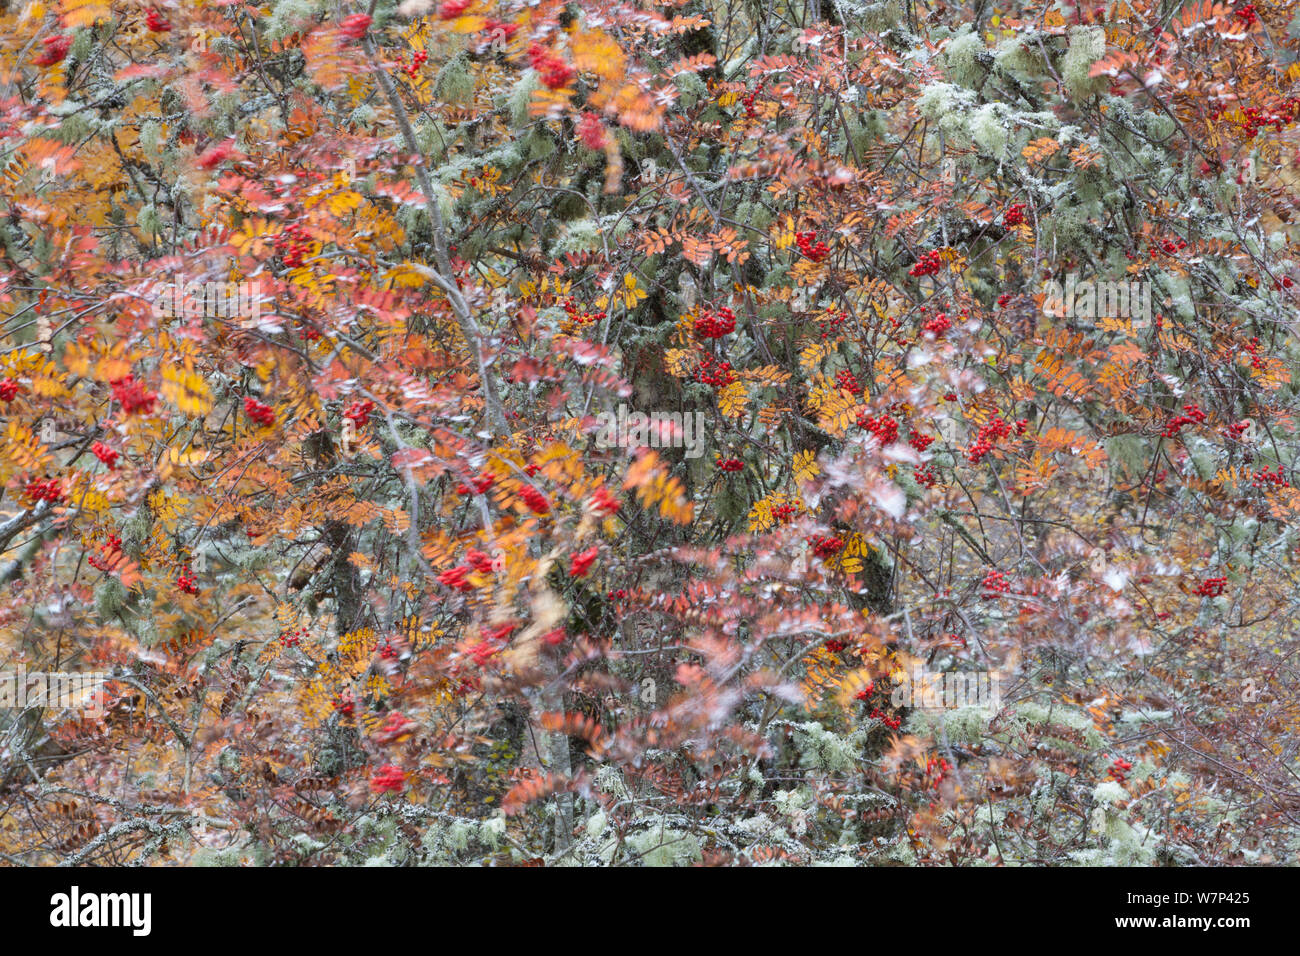 Misto bosco nativo comprende argento betulla (Betula pendula), Alder (Alnus hirsuta) e Rowan (Sorbus aucuparia) alberi in autunno, Cairngorms National Park, Scotland, Regno Unito, ottobre. Foto Stock